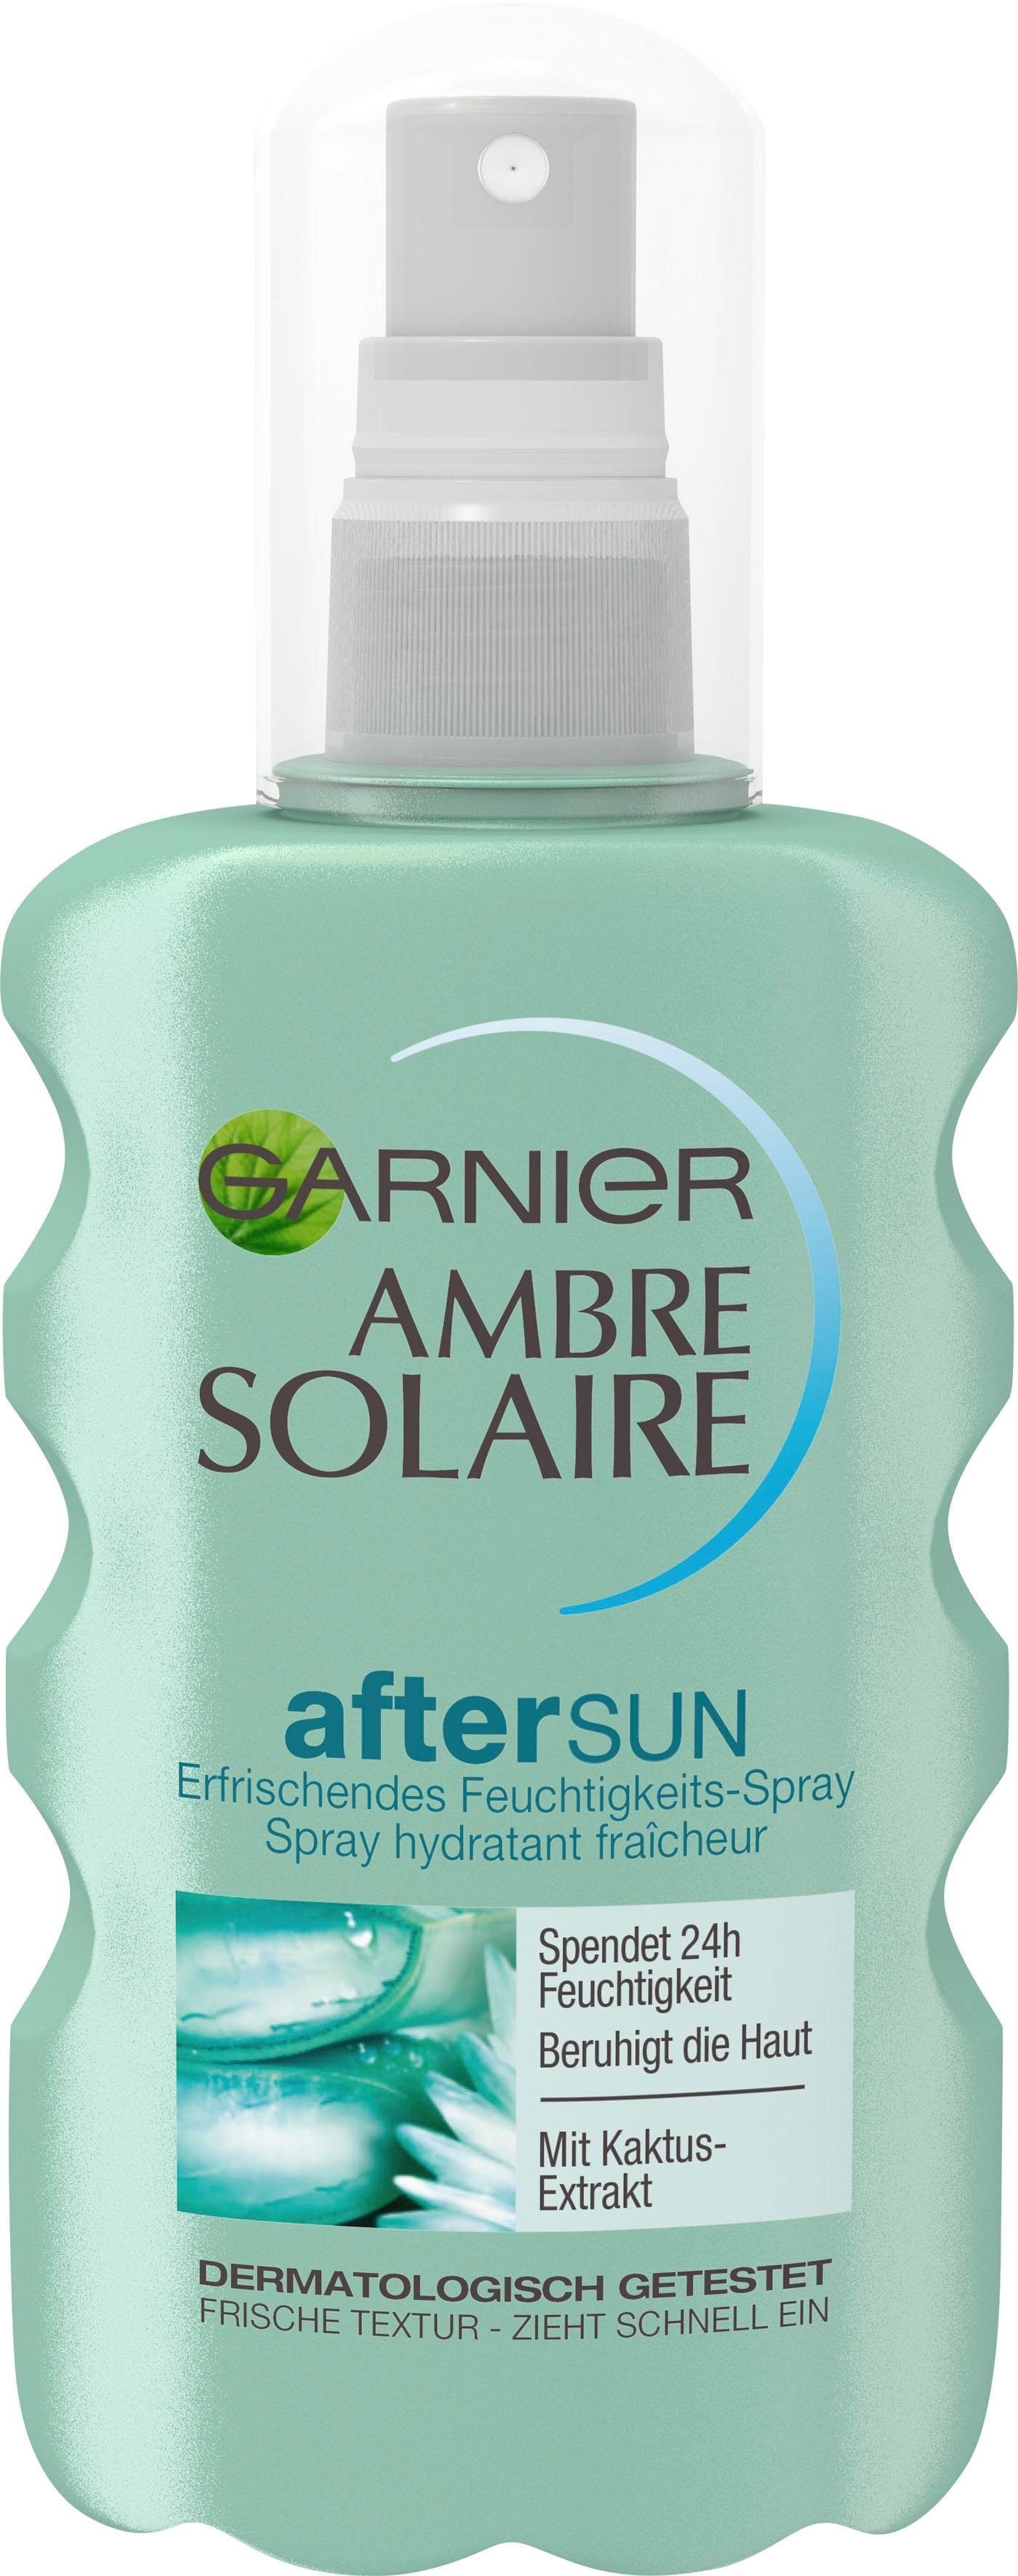 GARNIER After Sun-Spray mit Kaktus-Extrakt Solaire Feuchtigkeits-Après, Ambre